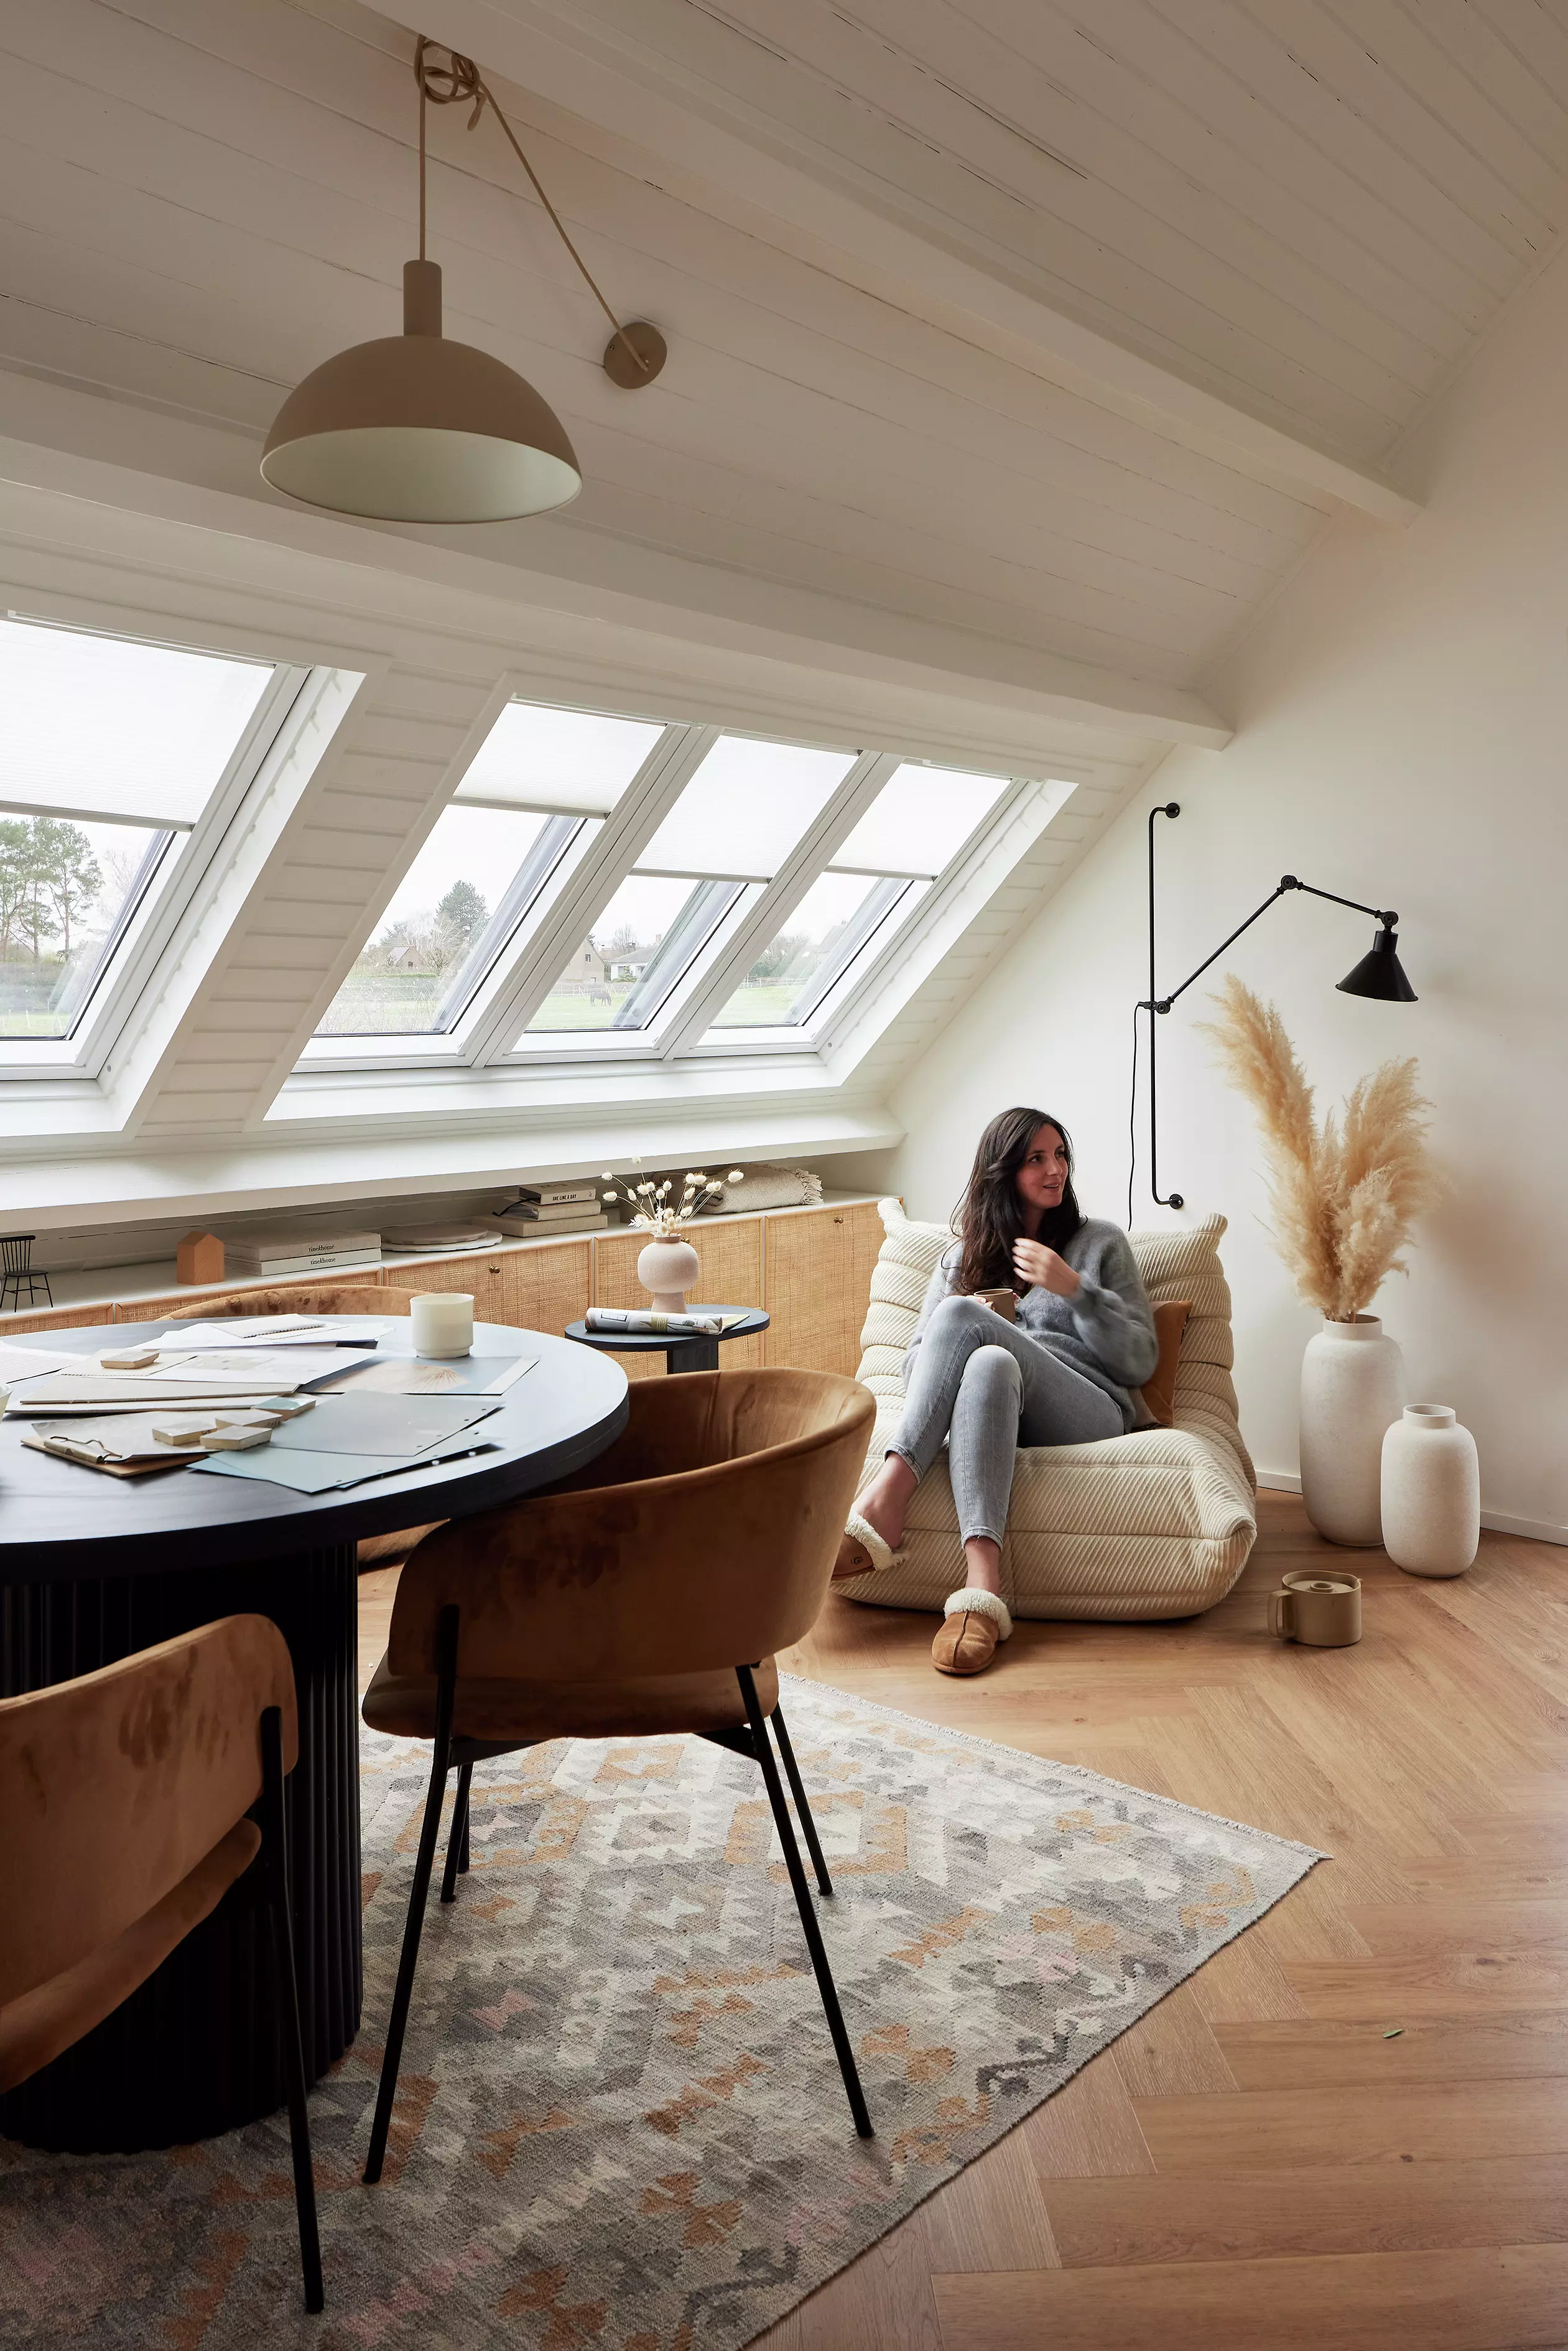 Spazio abitativo luminoso in mansarda con finestre per tetti VELUX, pavimenti in legno e mobili moderni.